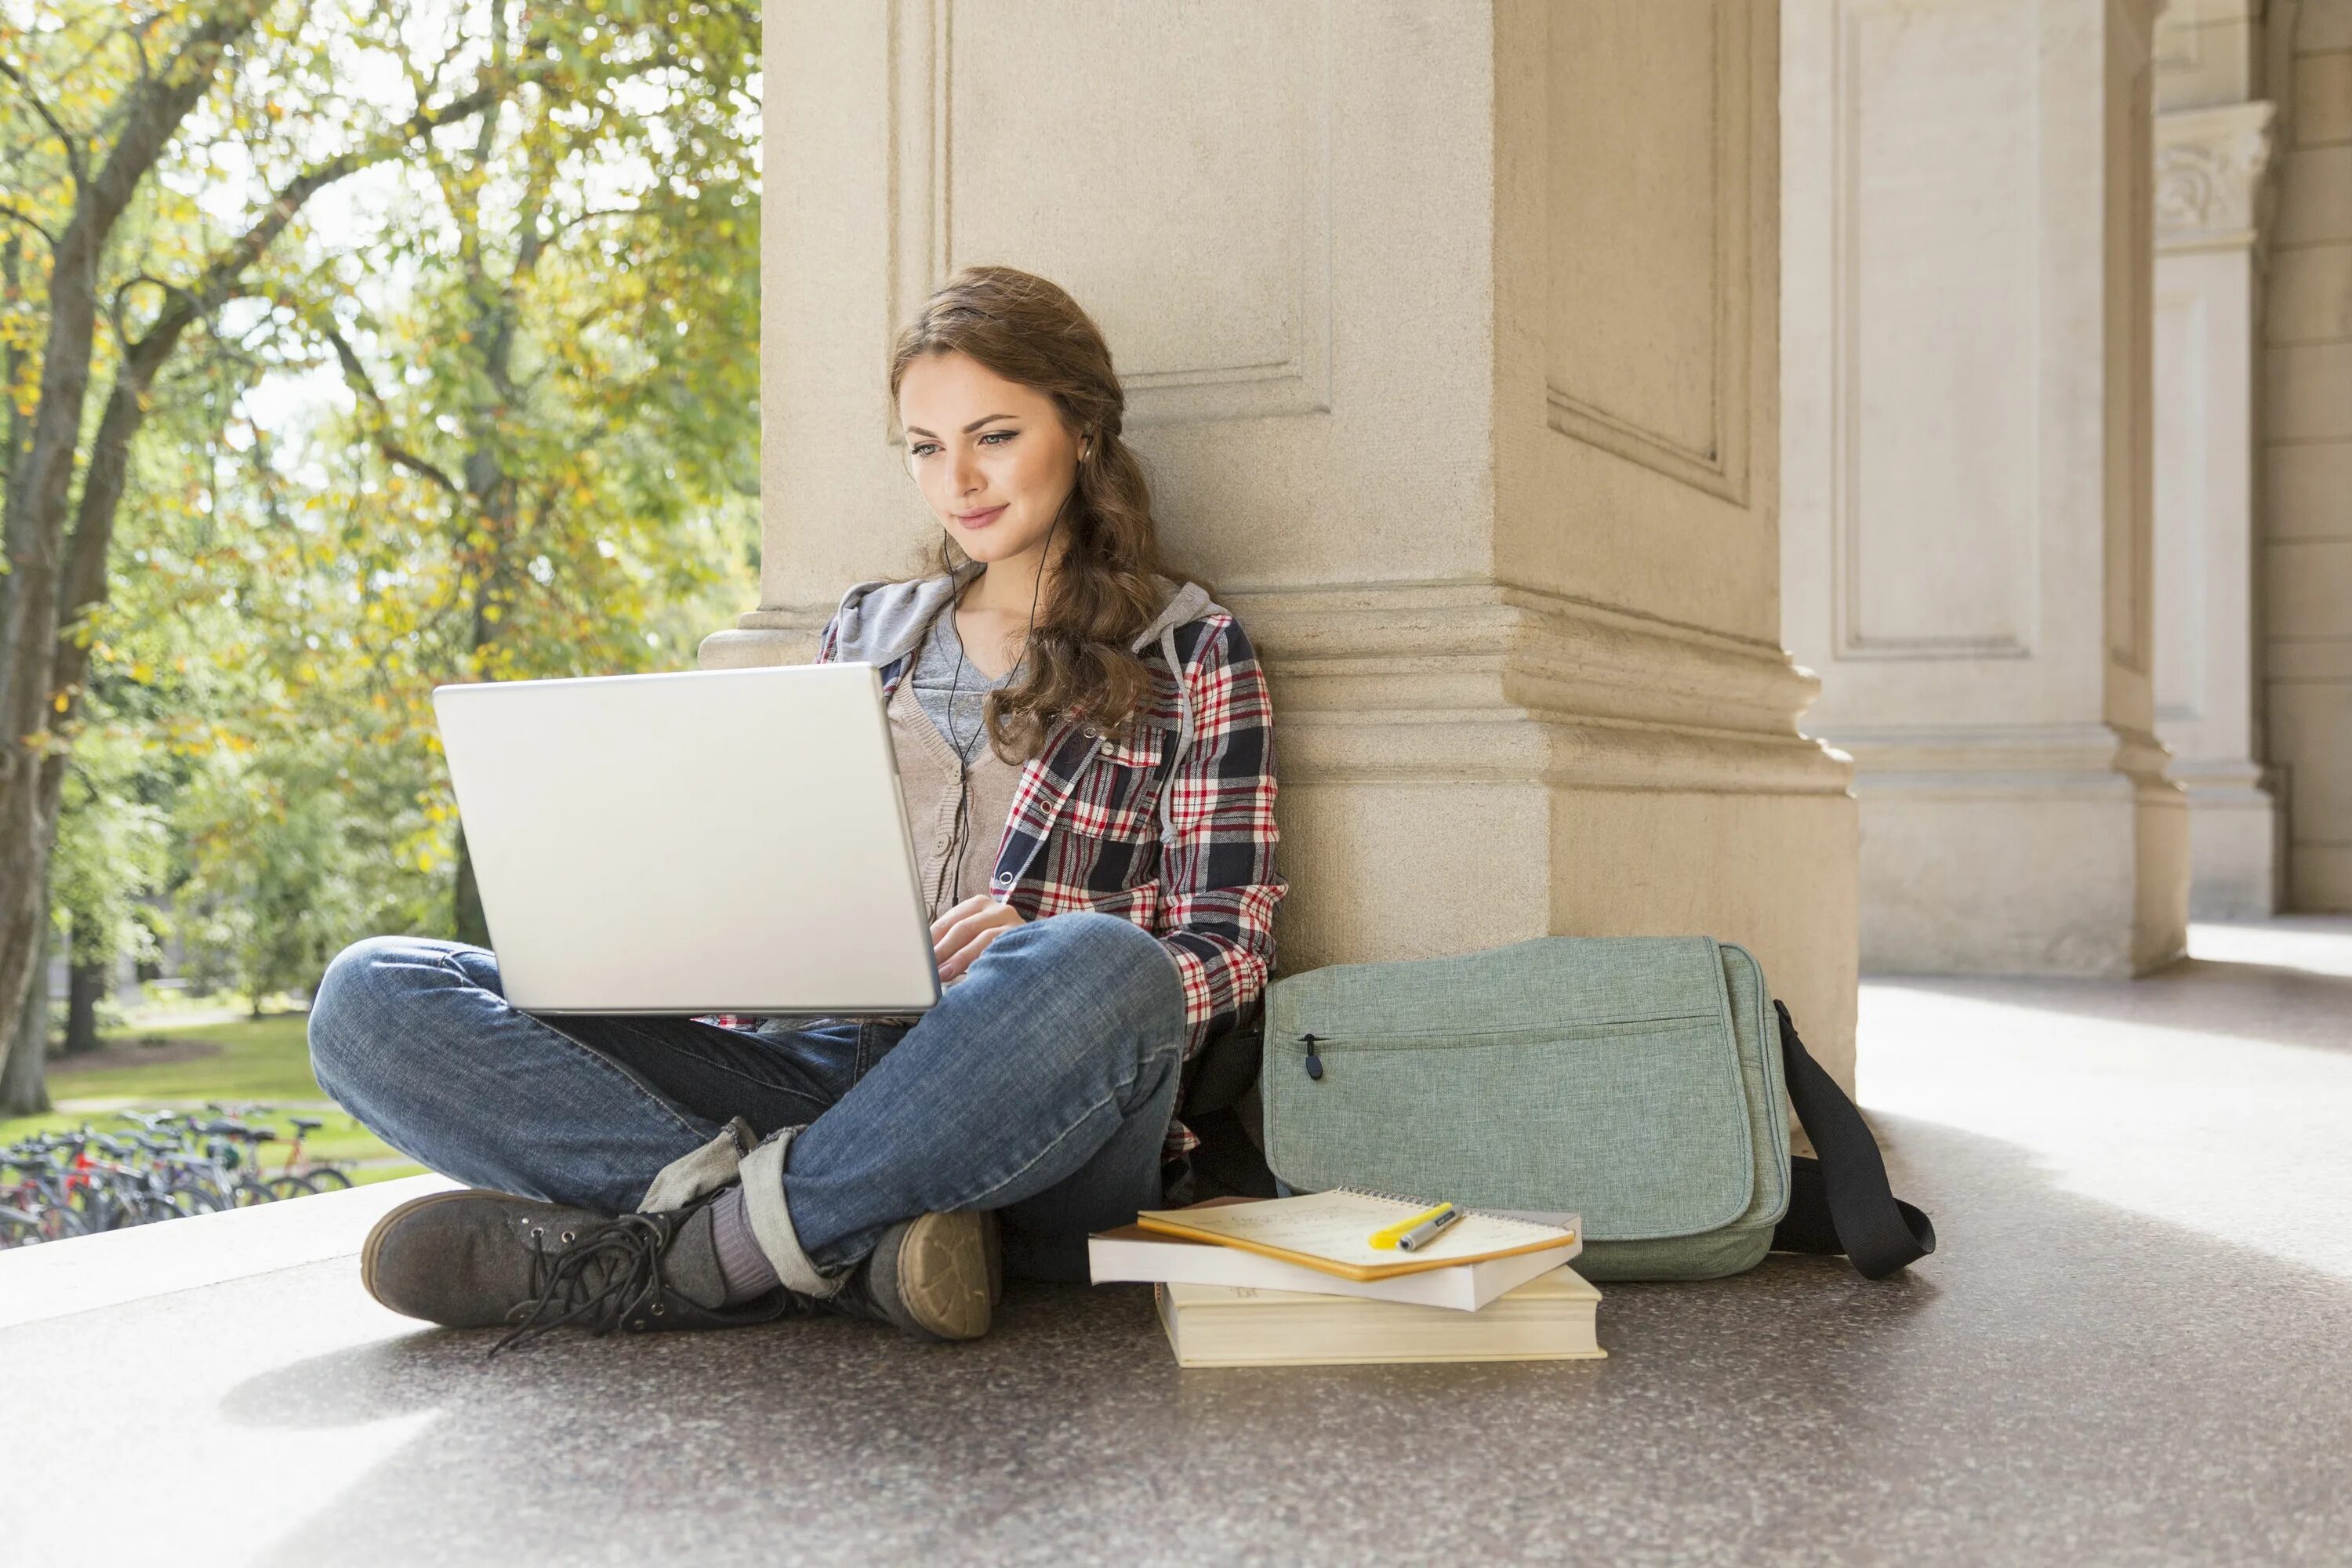 Apply students. Студент с ноутом. Студент за ноутбуком. Человек с ноутбуком. Студентка с ноутбуком.